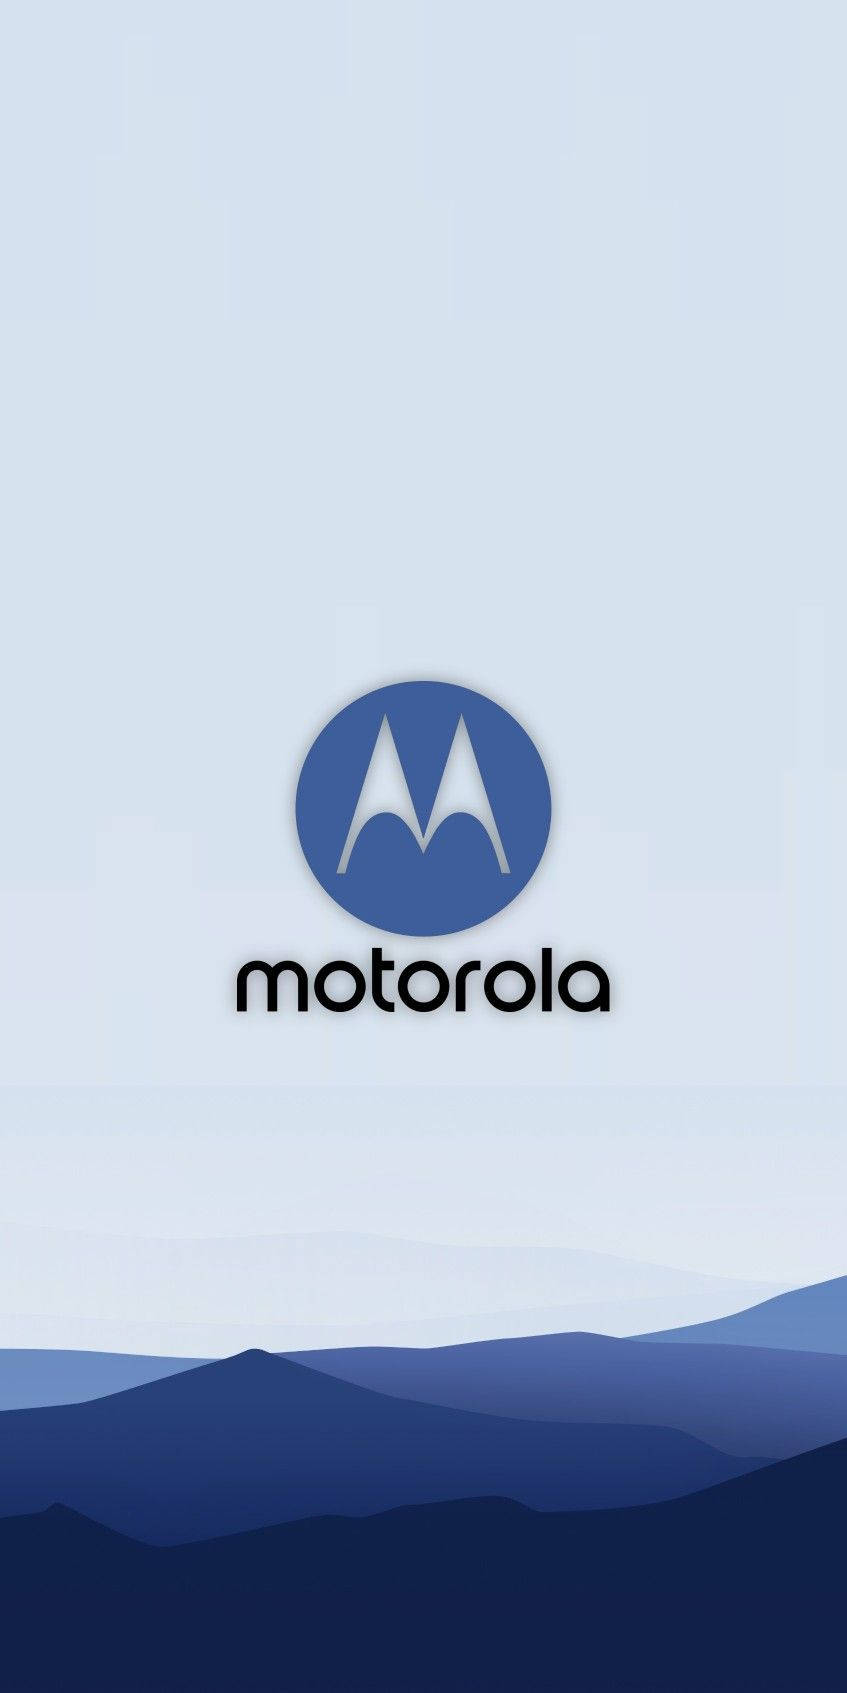 Motorola Vector Art Background